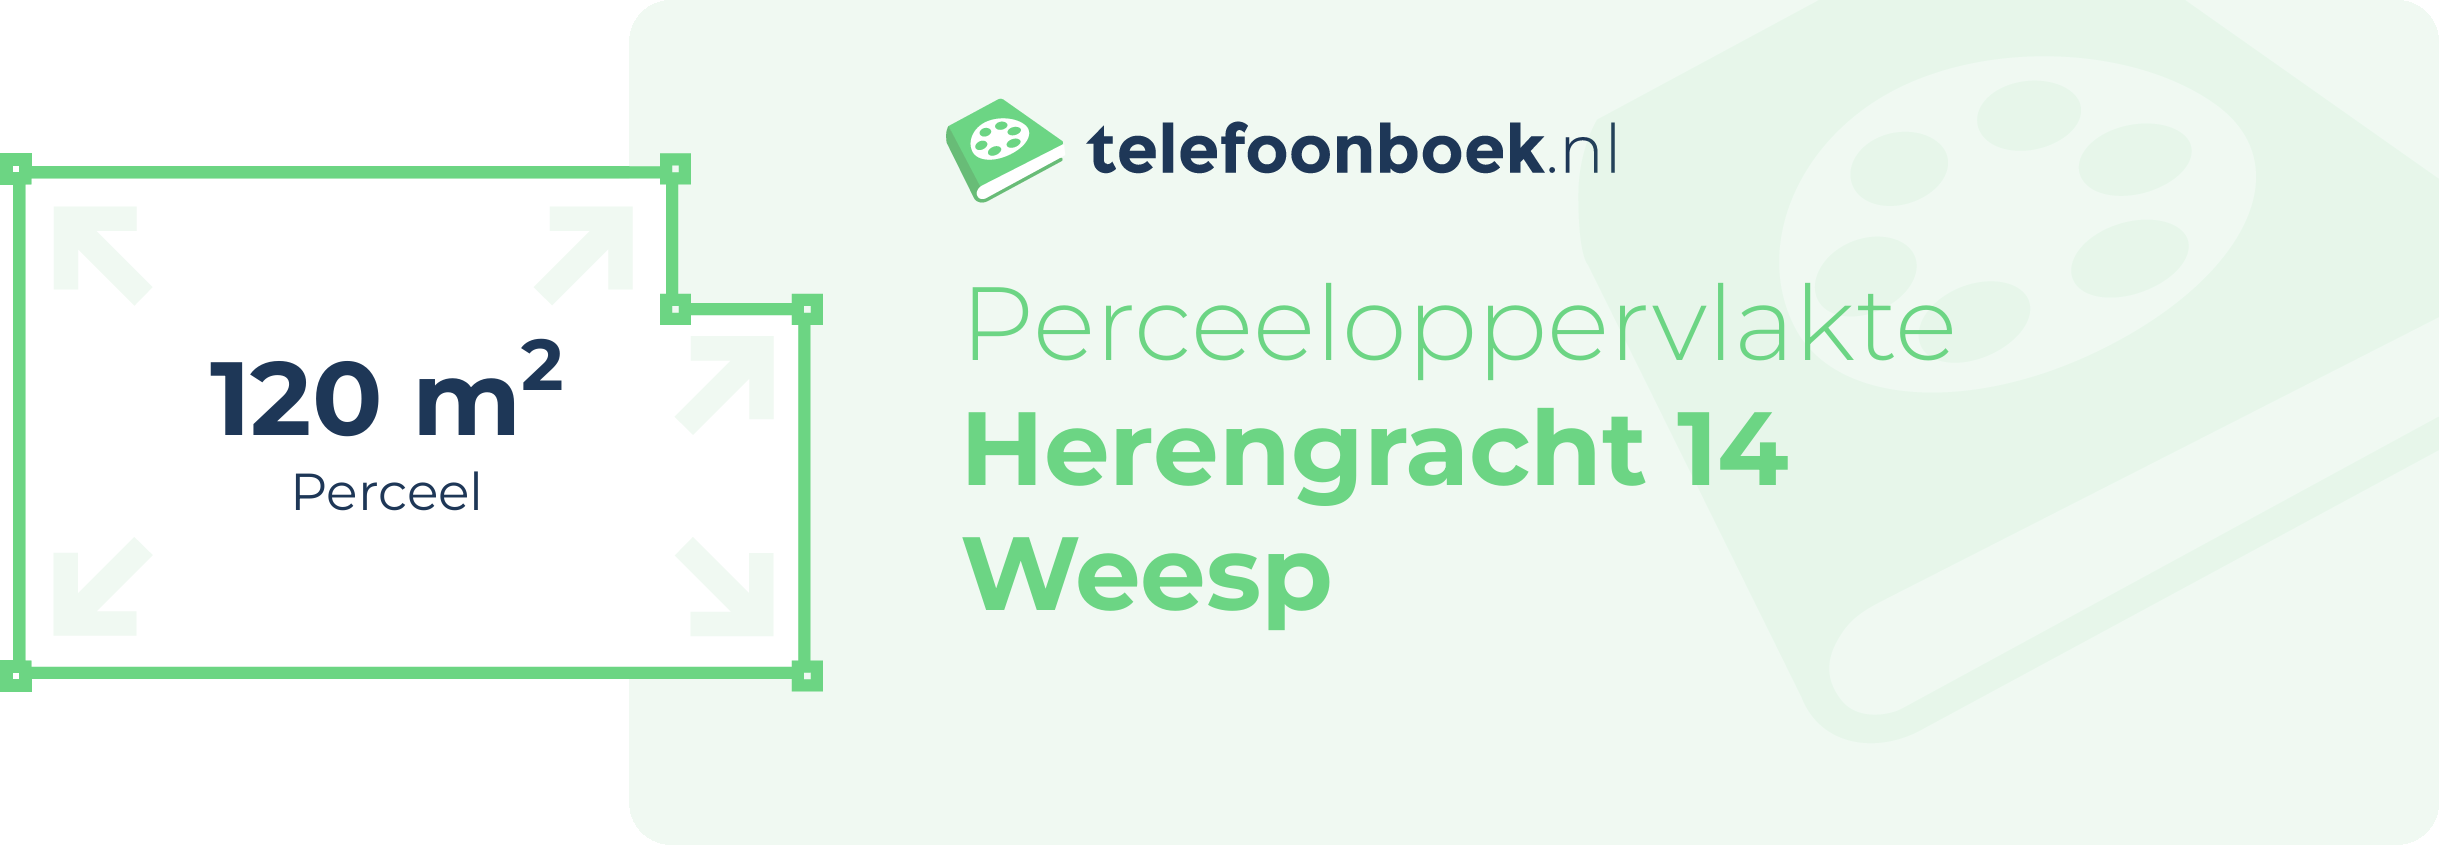 Perceeloppervlakte Herengracht 14 Weesp